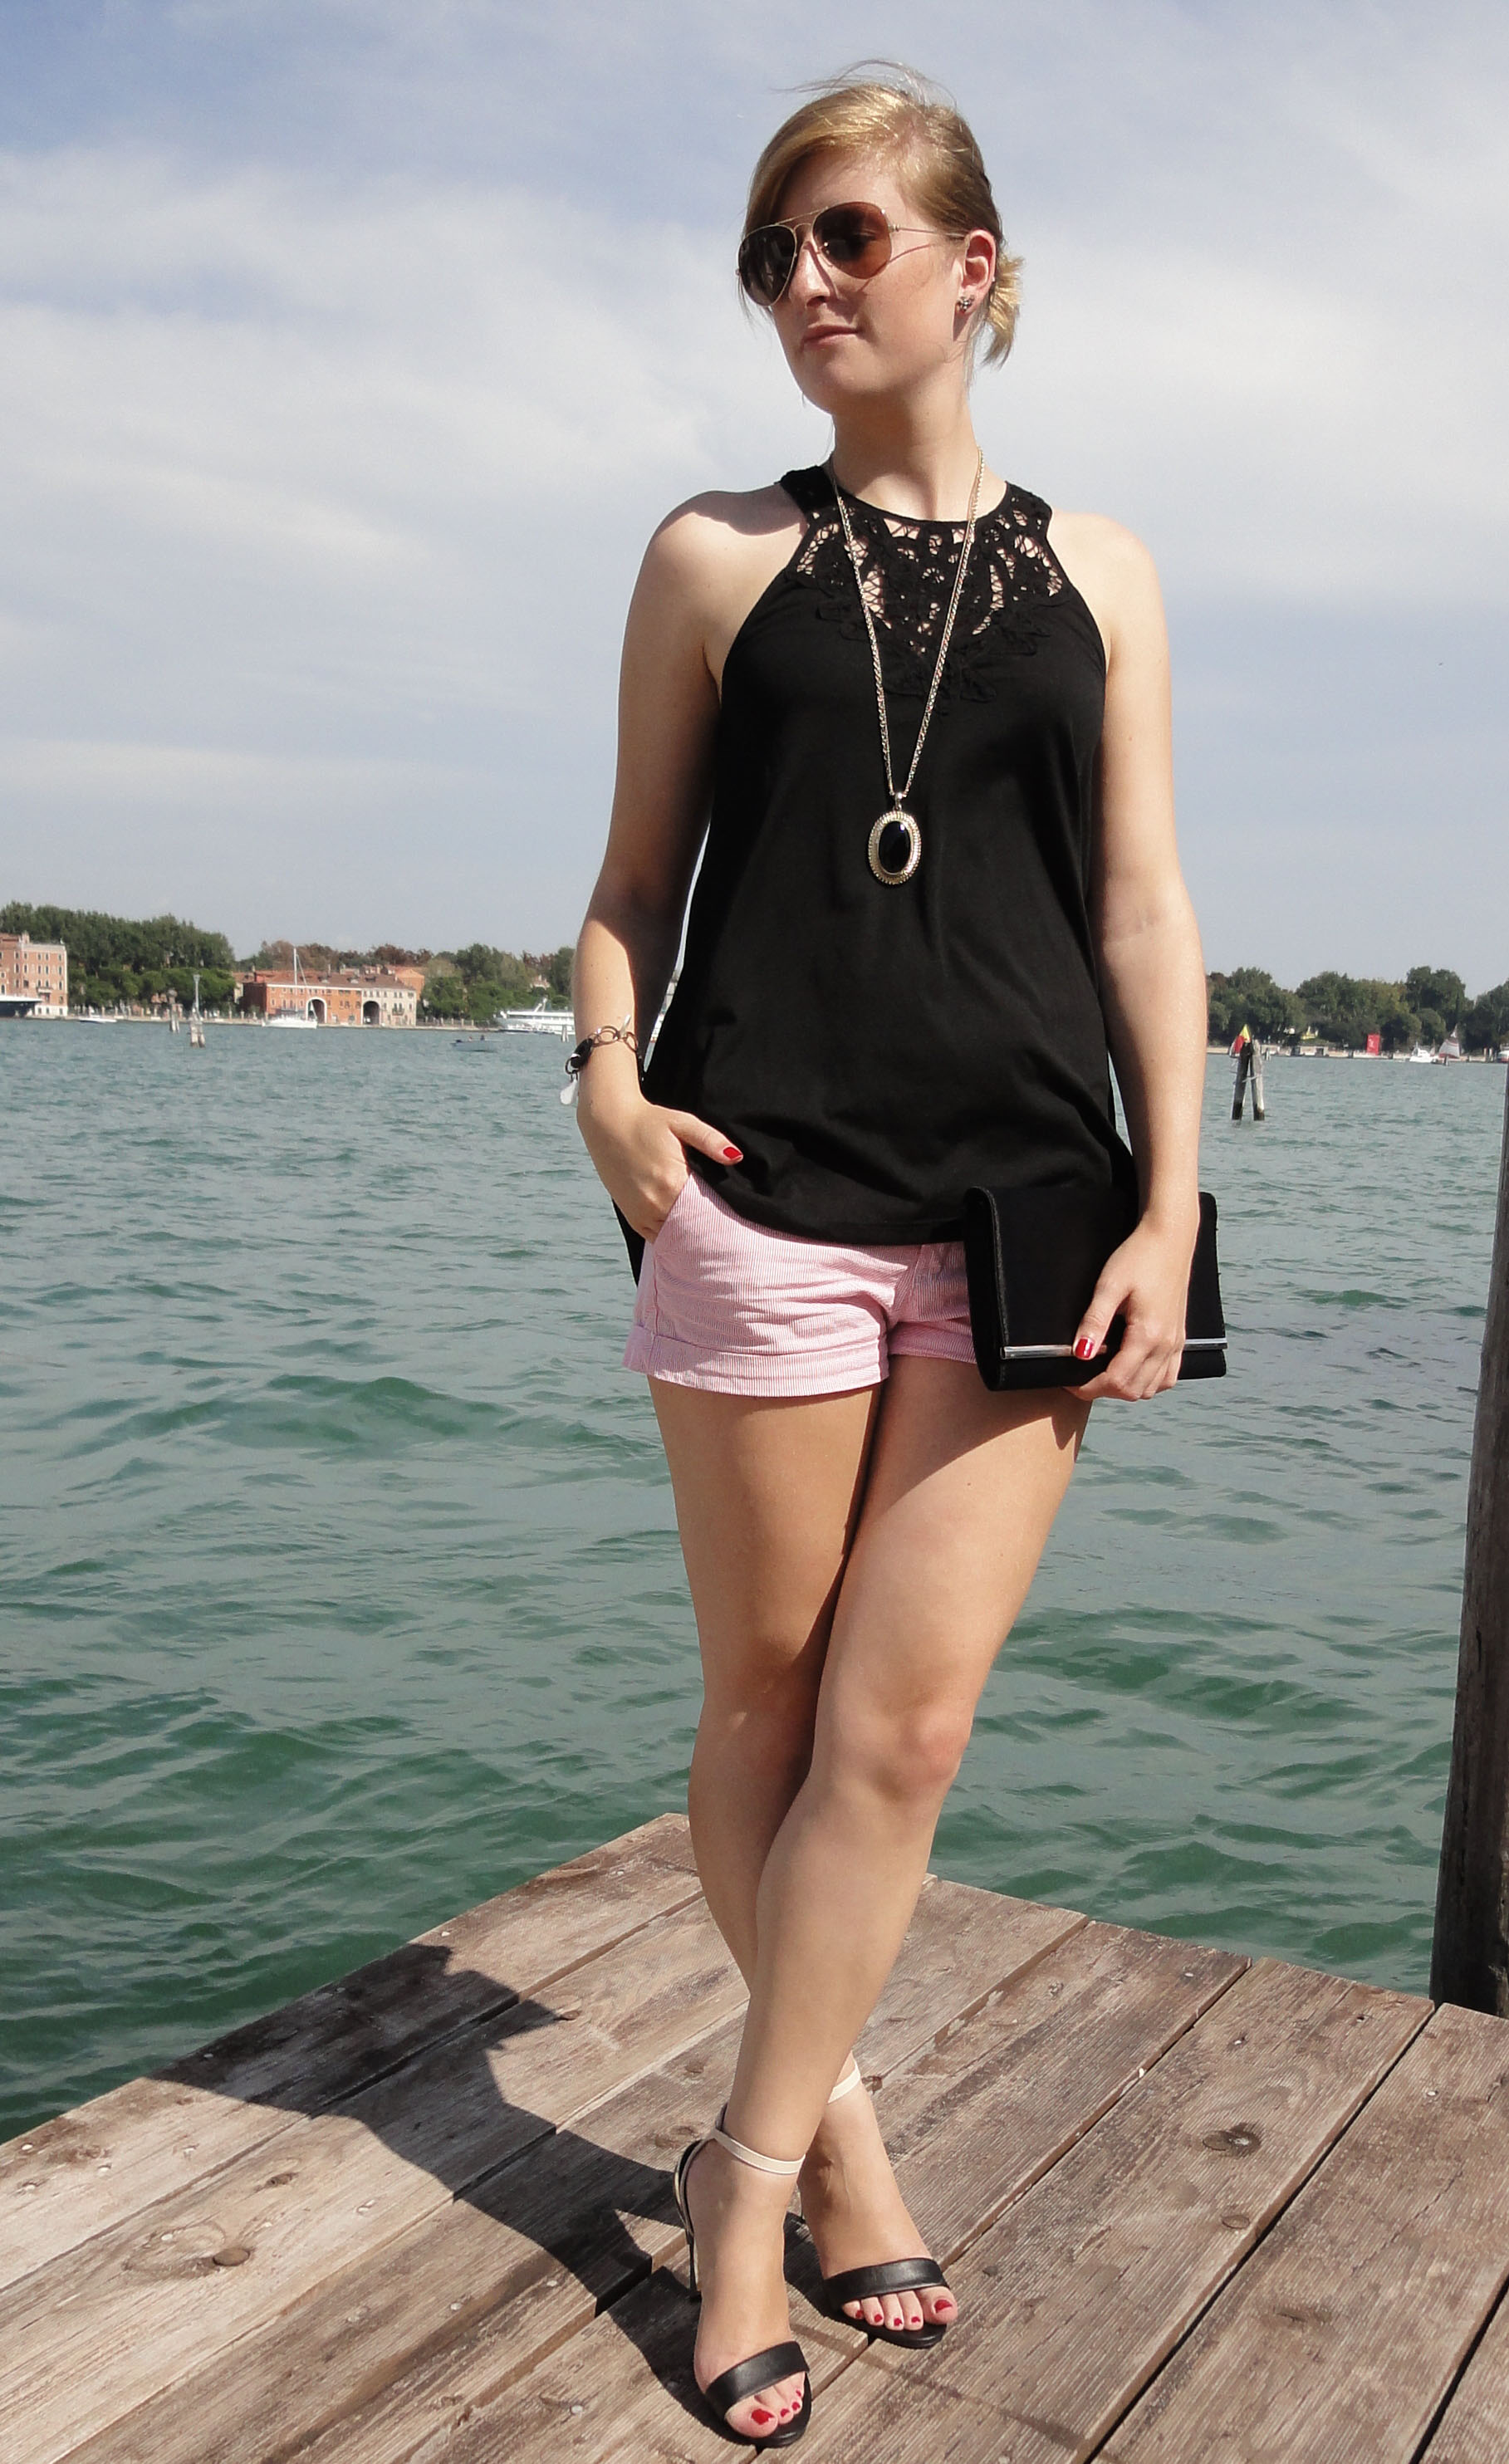 Venice seaside Venedig Sightseeing Outfit Sommeroutfit gestreifte Hotpants kombinieren Highheels Modeblog Italien 3